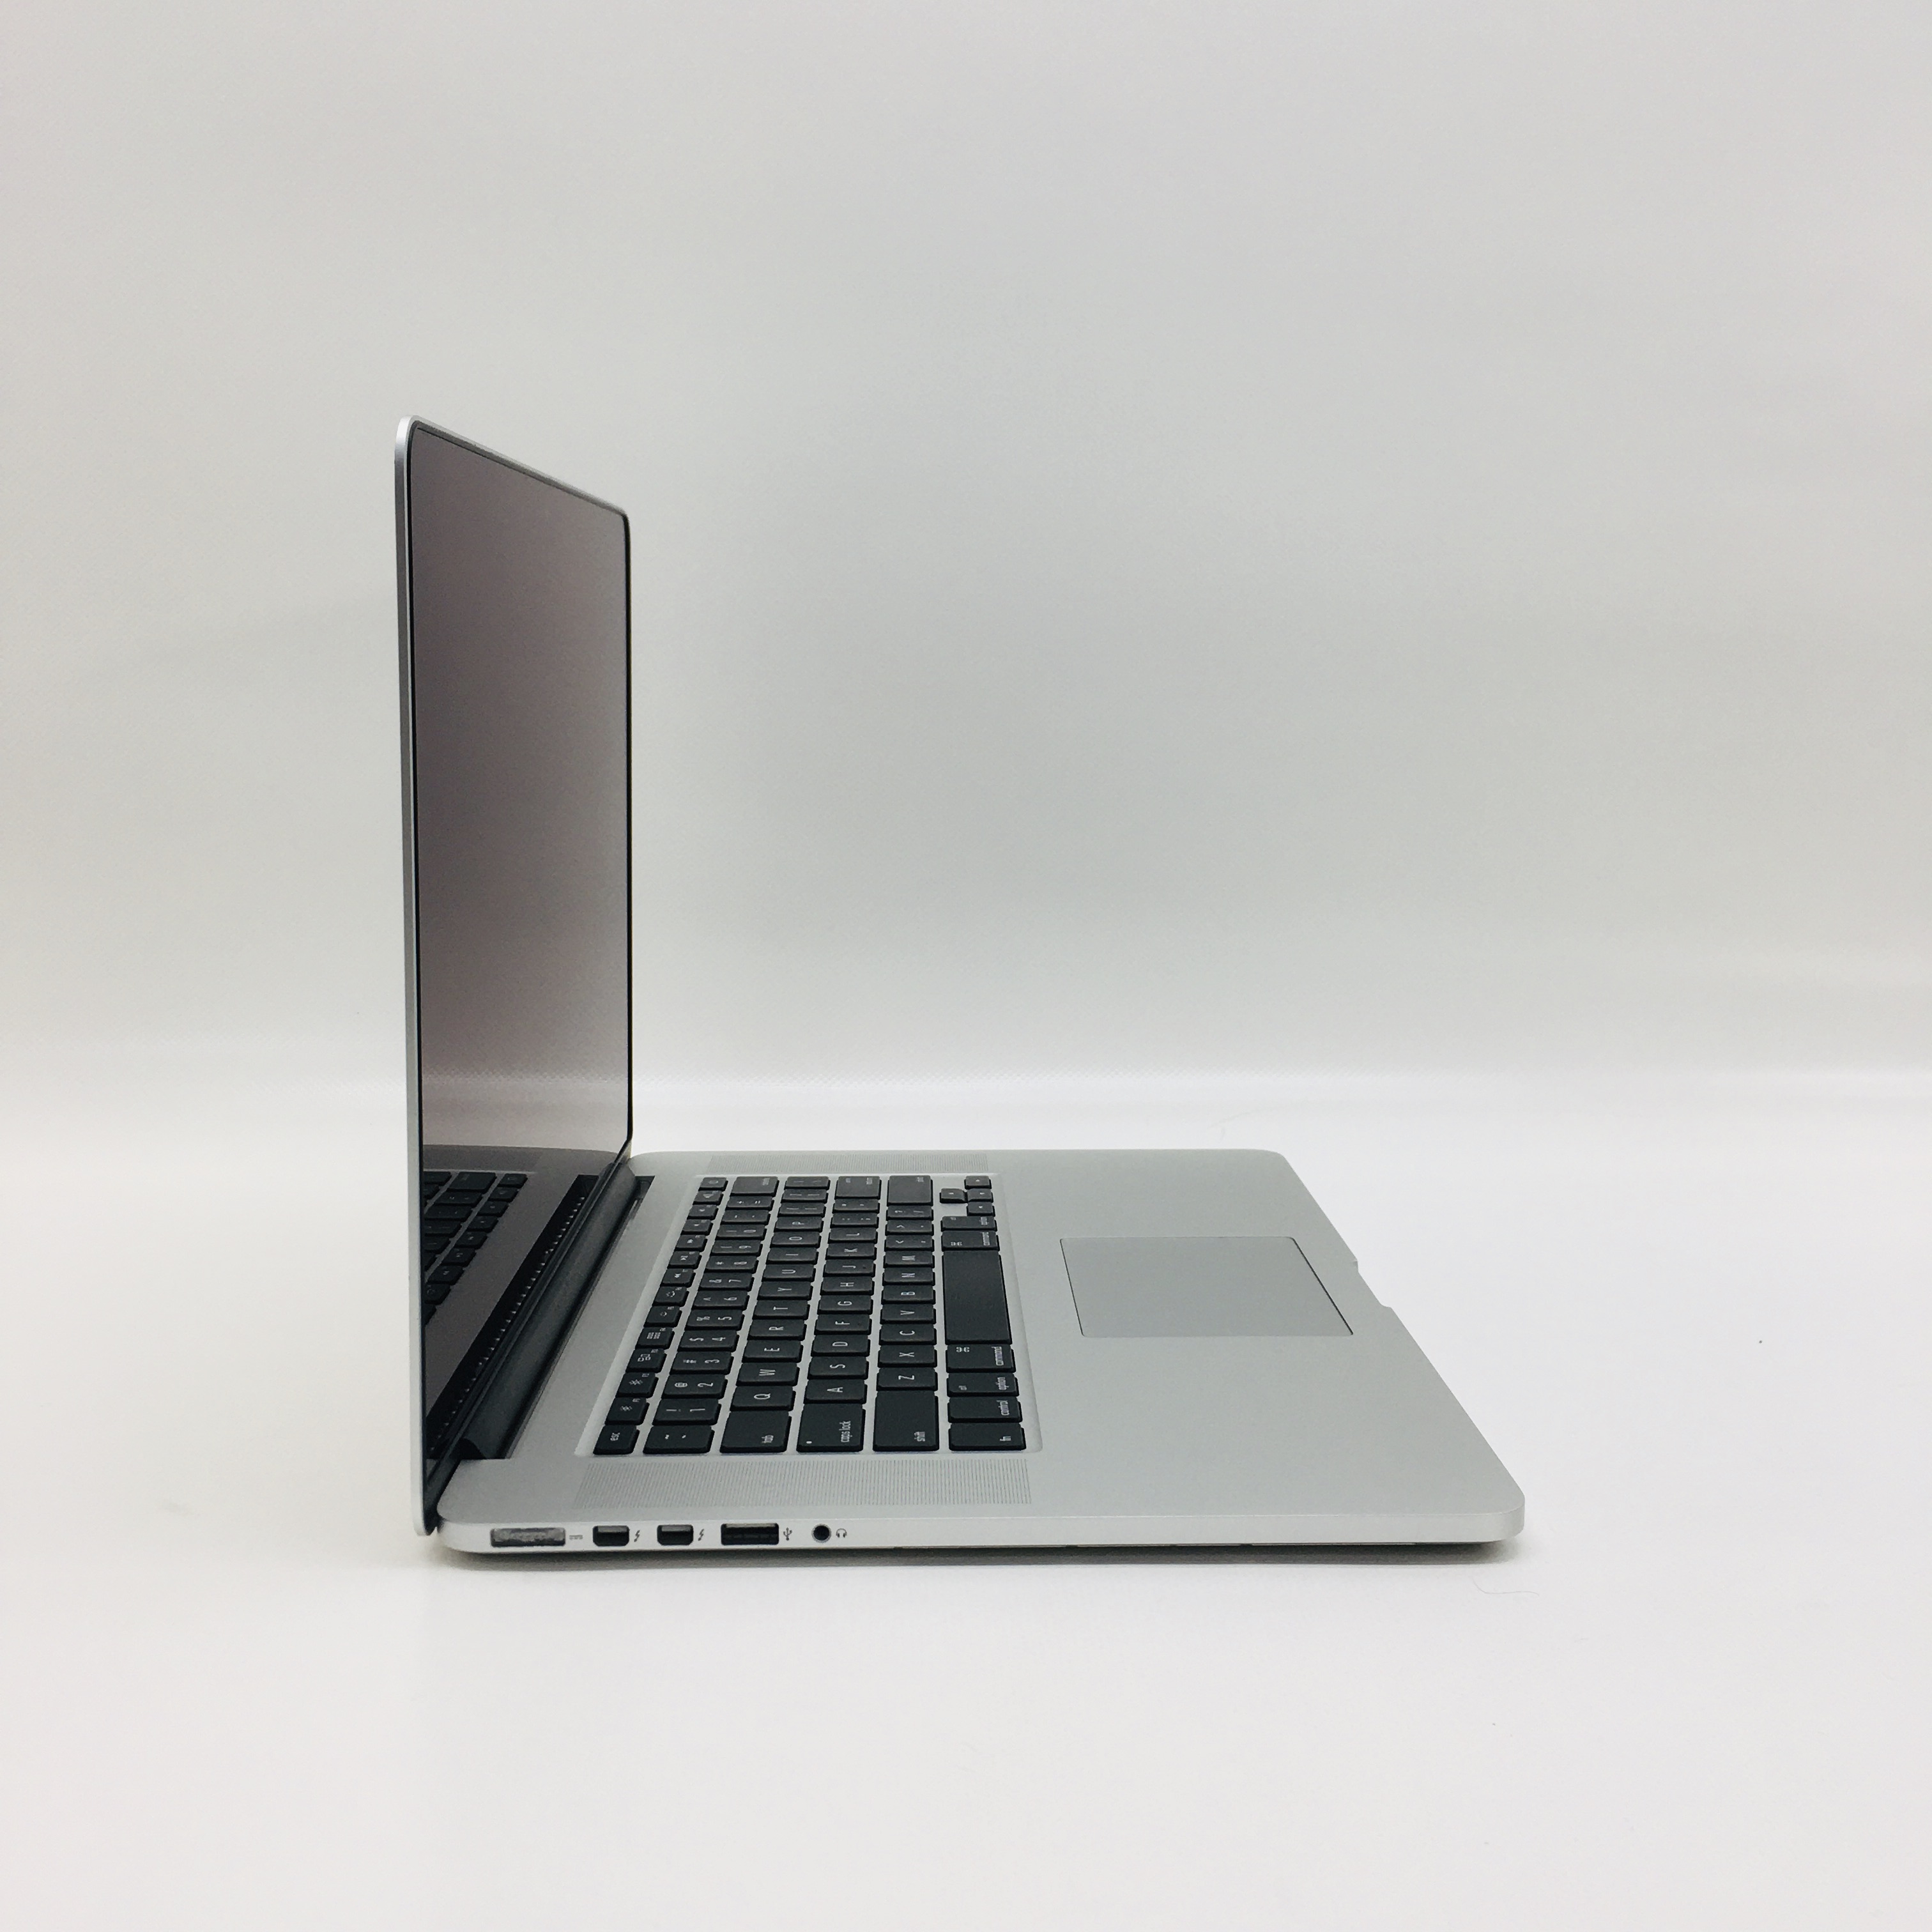 MacBook Pro Retina 15" Mid 2015 (Intel Quad-Core i7 2.2 GHz 16 GB RAM 1 TB SSD), Intel Quad-Core i7 2.2 GHz, 16 GB RAM, 1 TB SSD, image 2